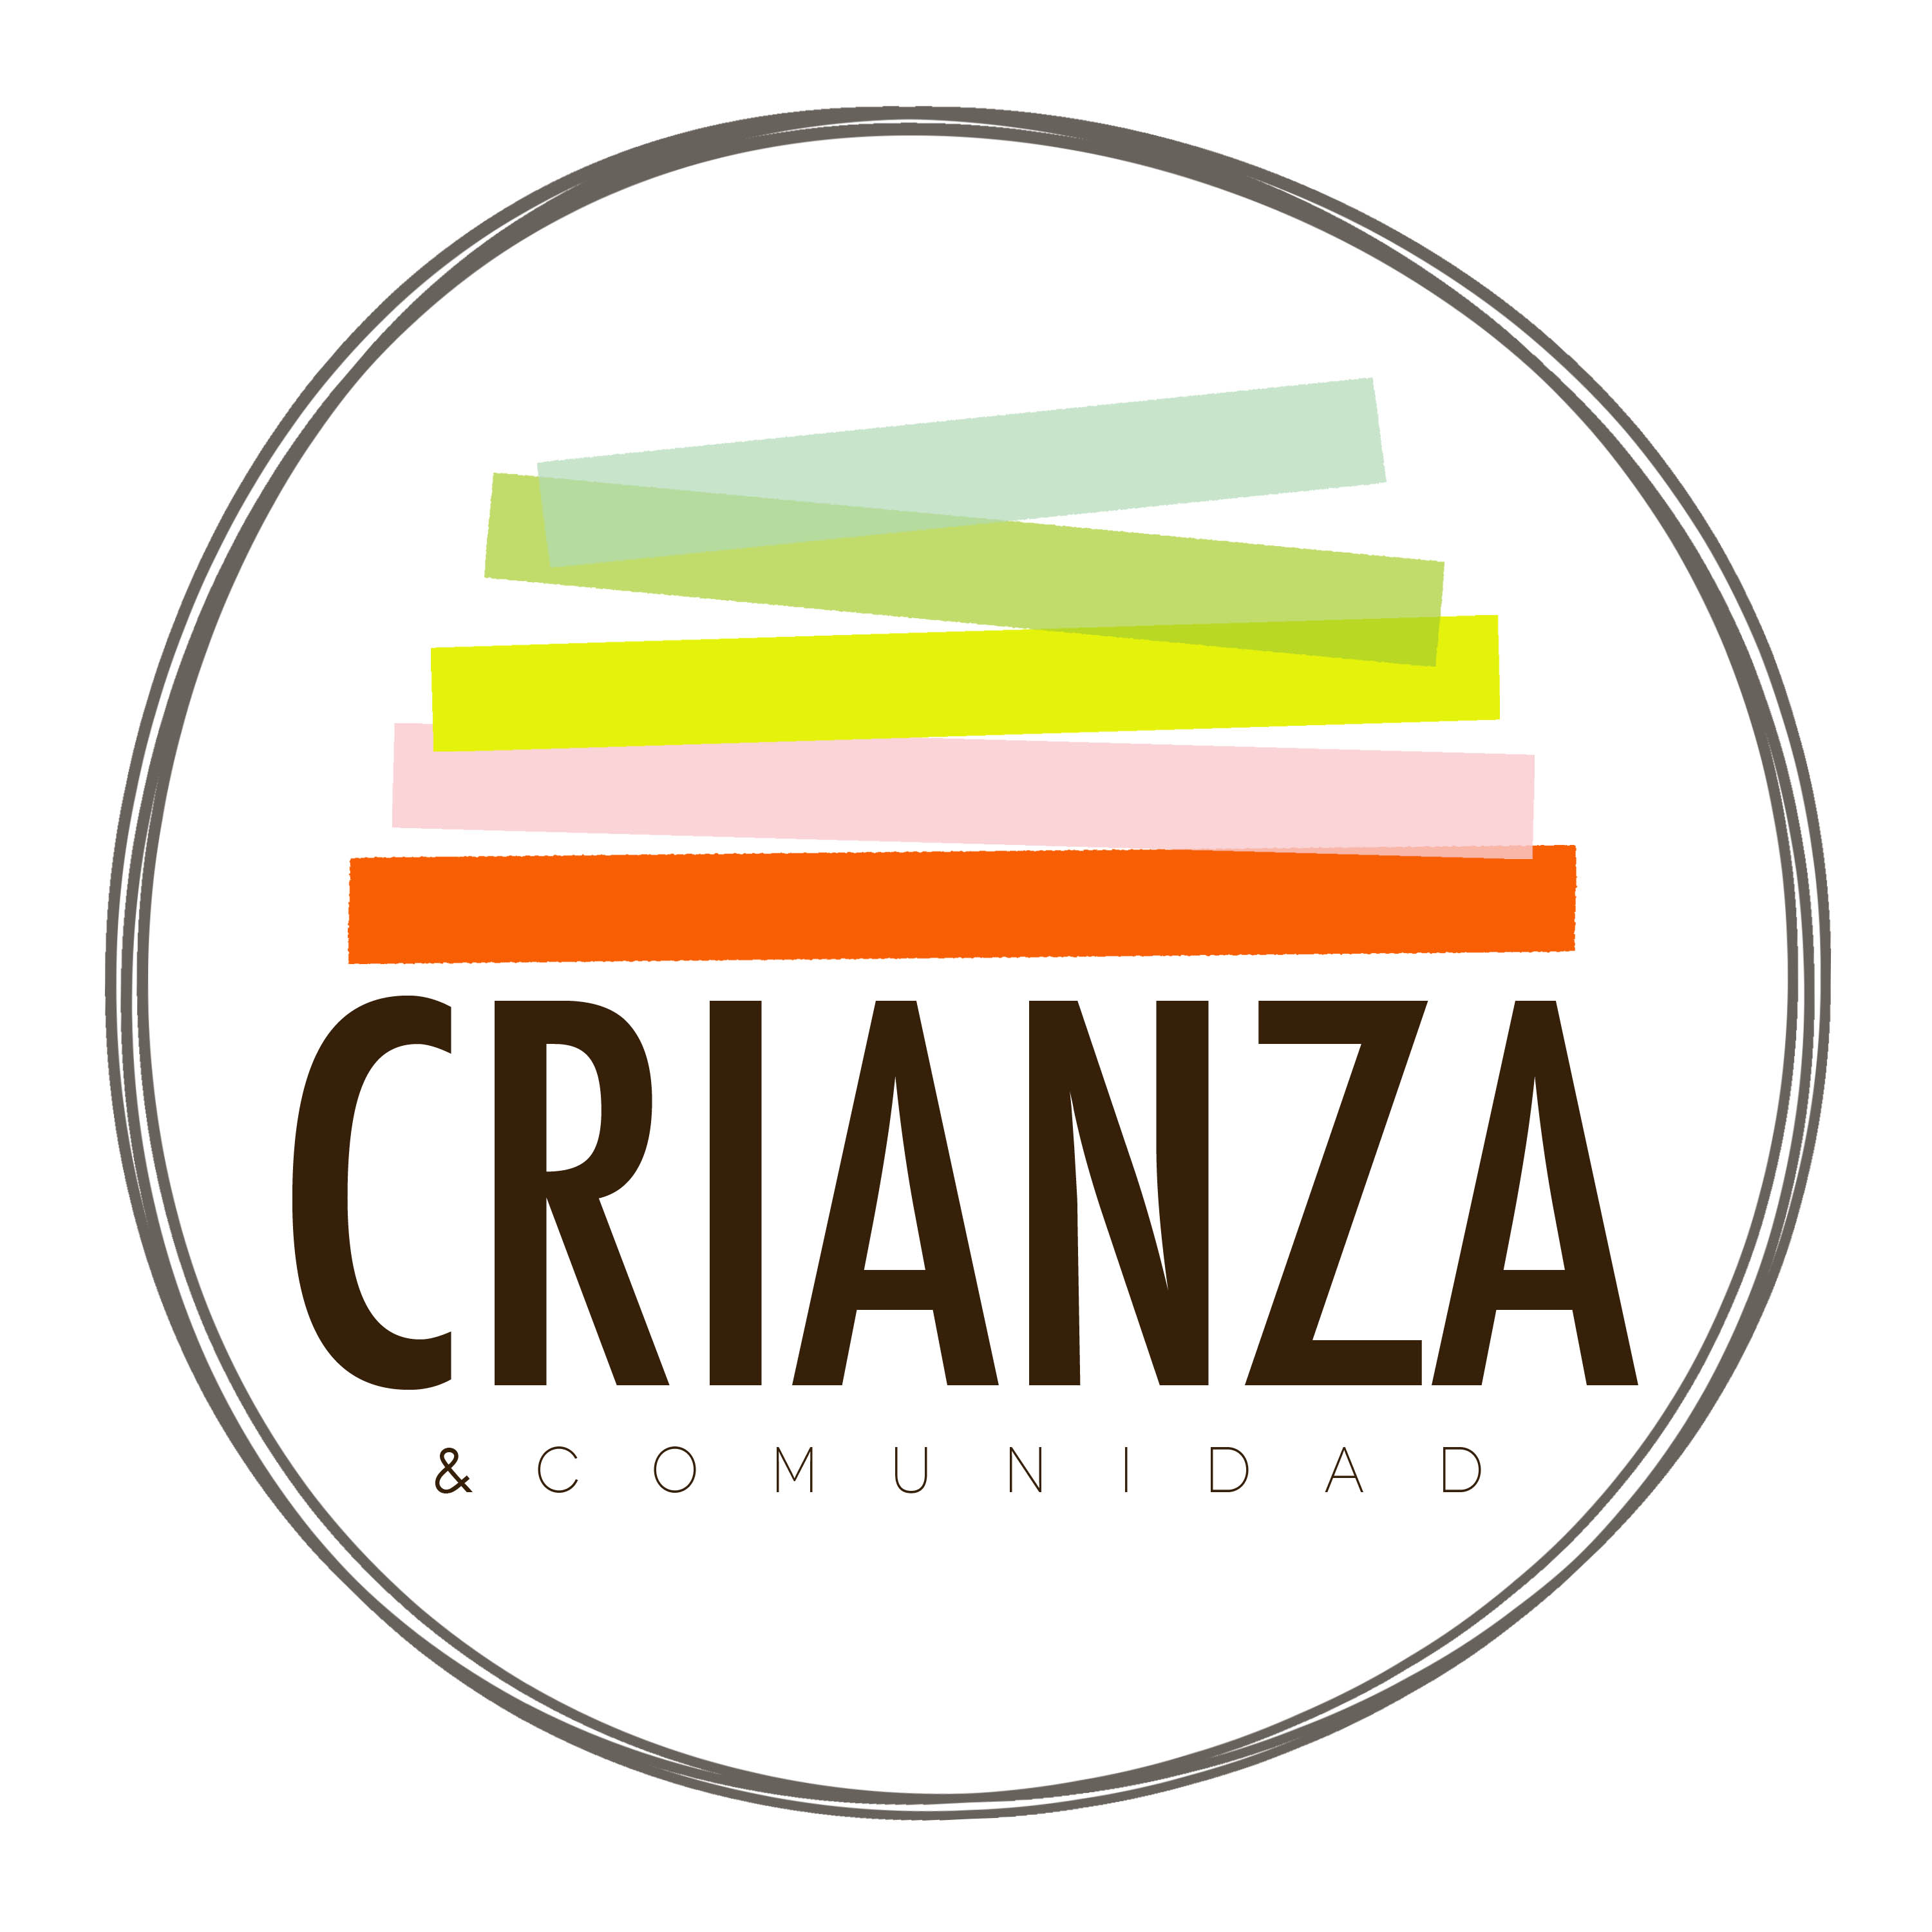 Creanza Logo photo - 1